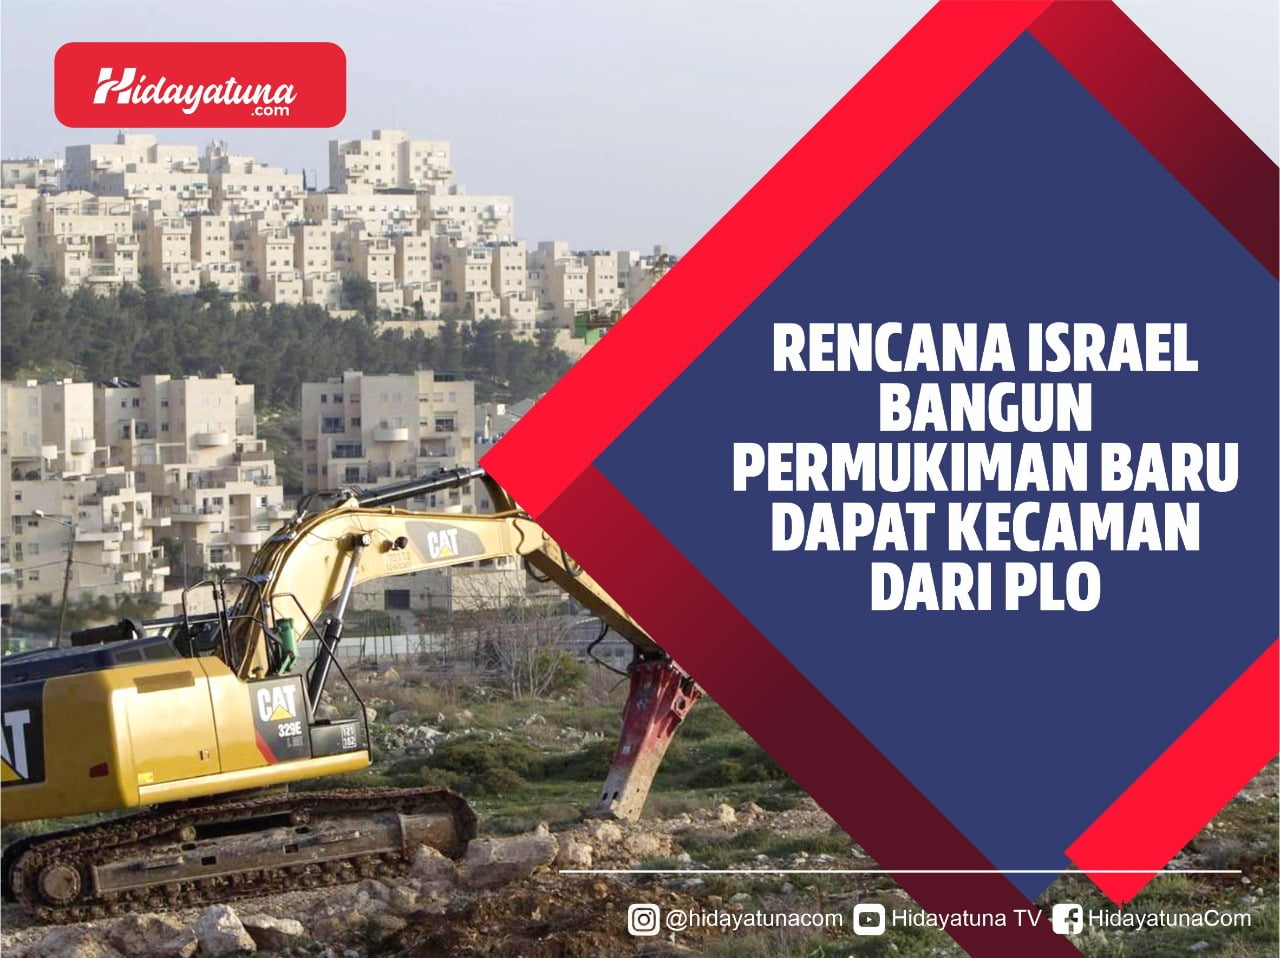  Rencana Israel Bangun Pemukiman Baru Dapat Kecaman dari PLO